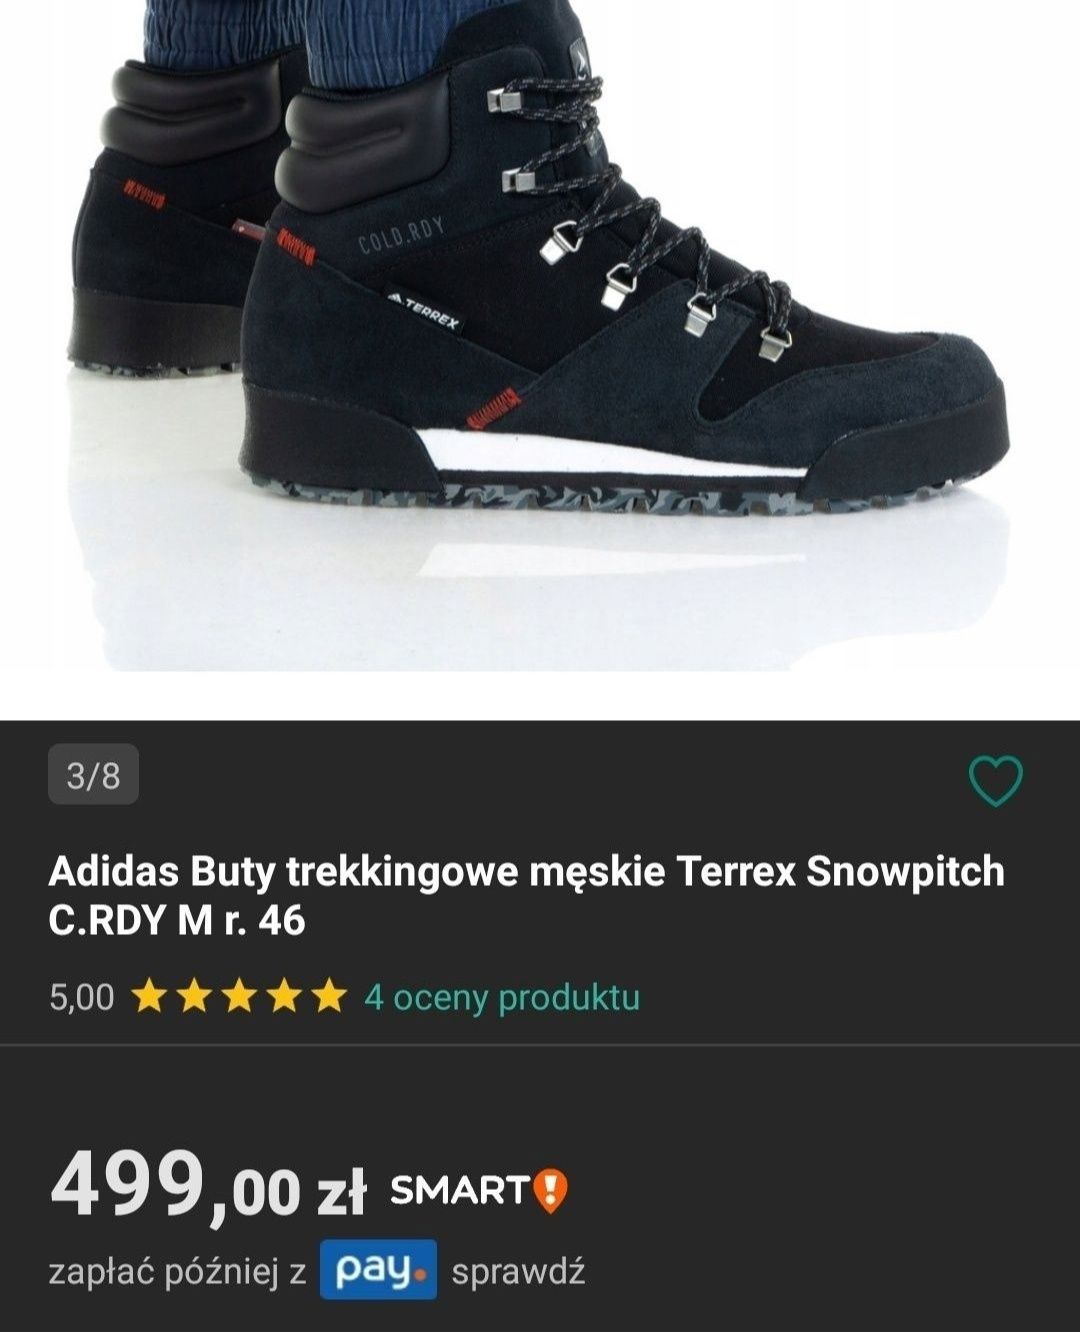 Nowe buty Adidas Terrex Snowpitch 37 38 39,40 41 damskie botki skóra